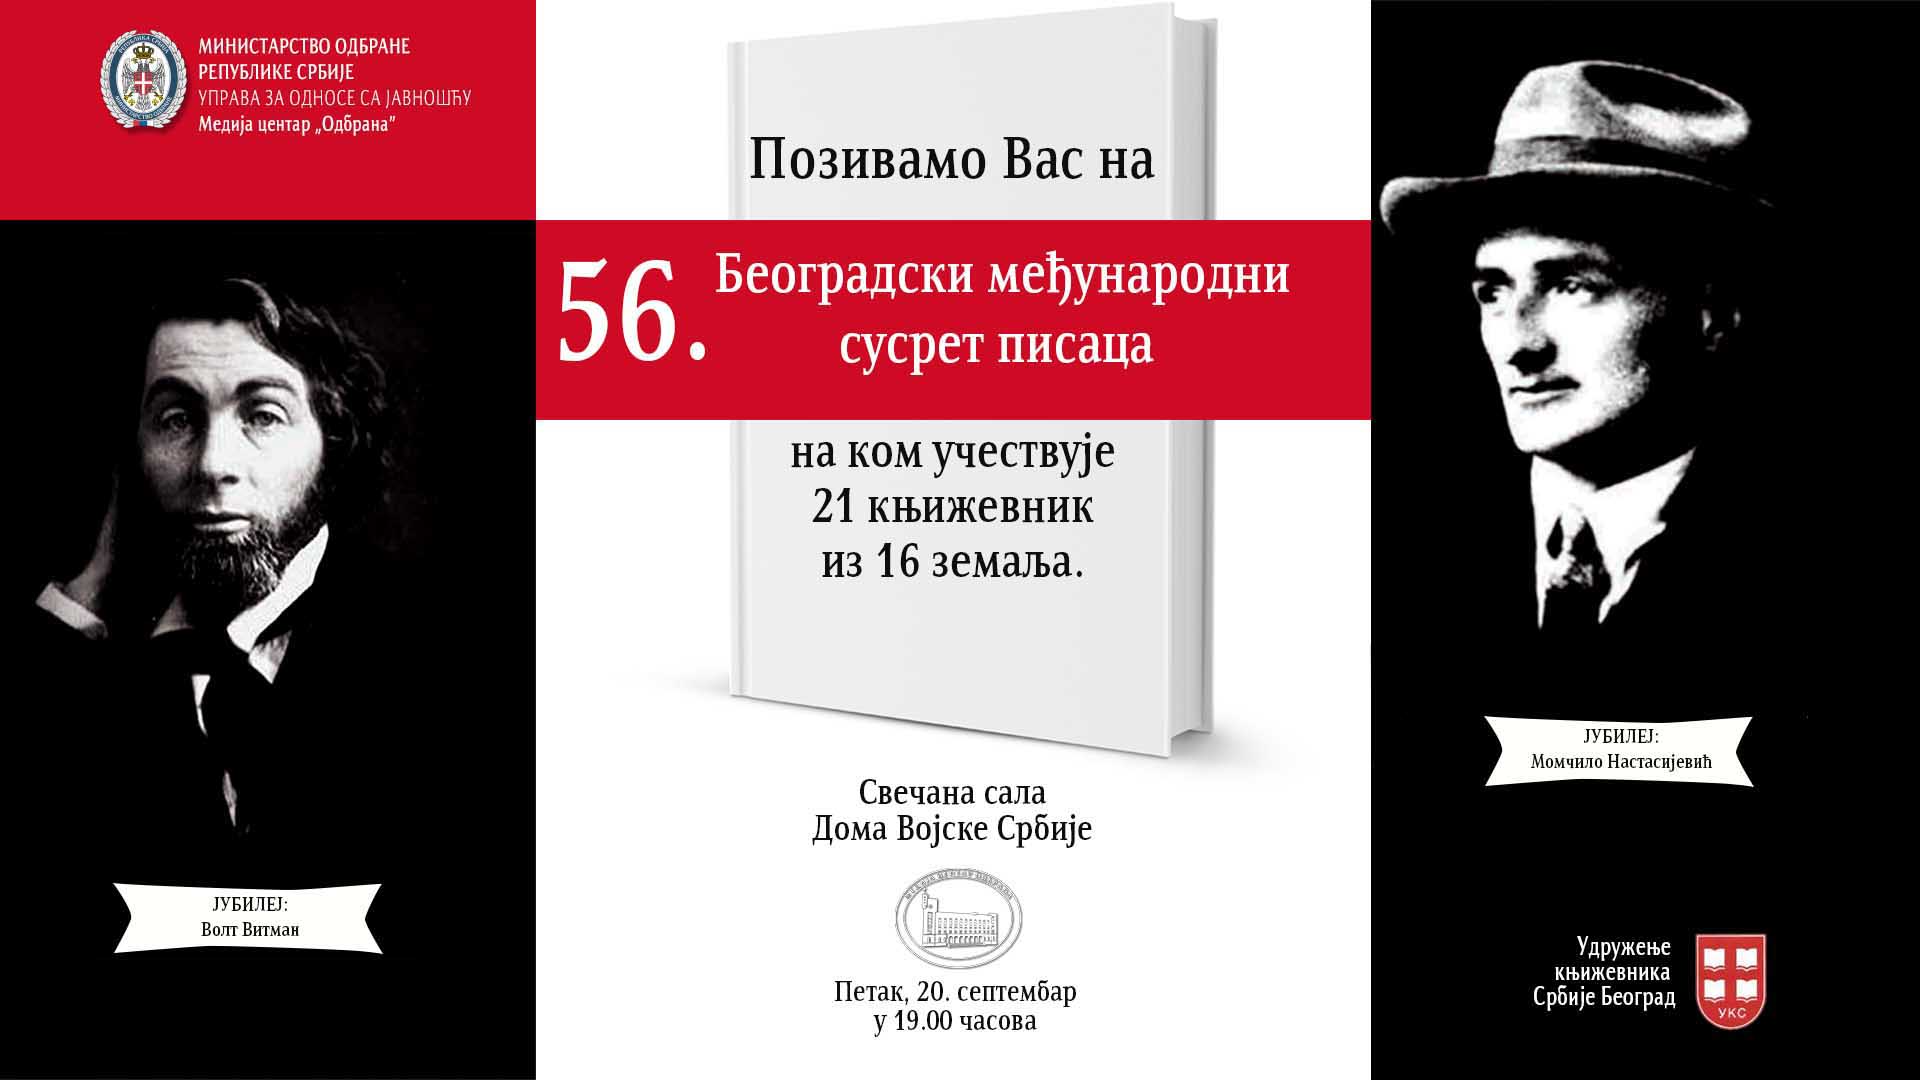 Beogradski međunarodni susret pisaca 20. septembra 1